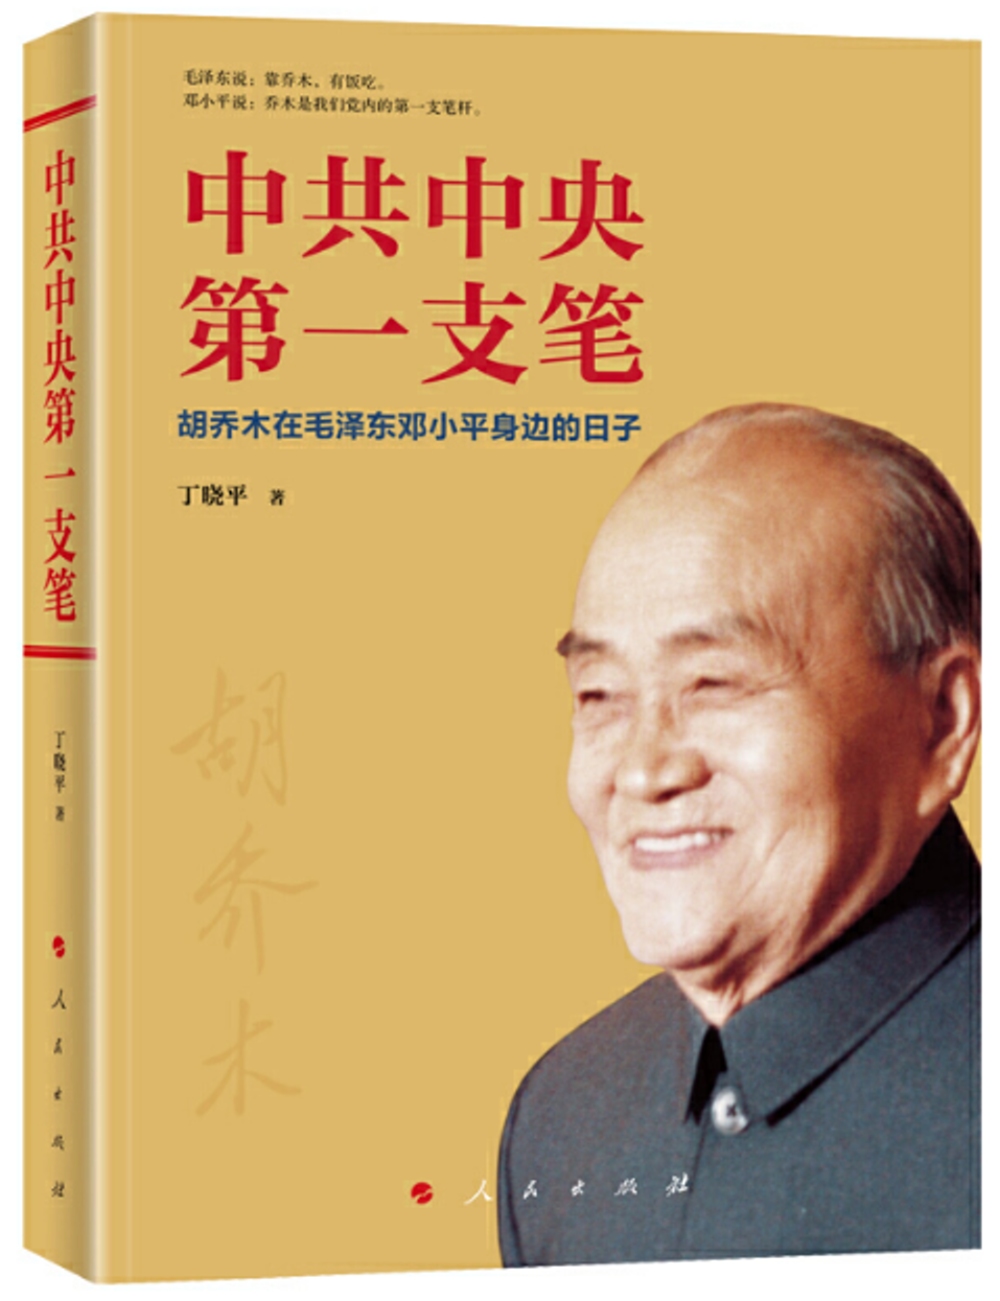 中共中央第一支筆——胡喬木在毛澤東鄧小平身邊的日子